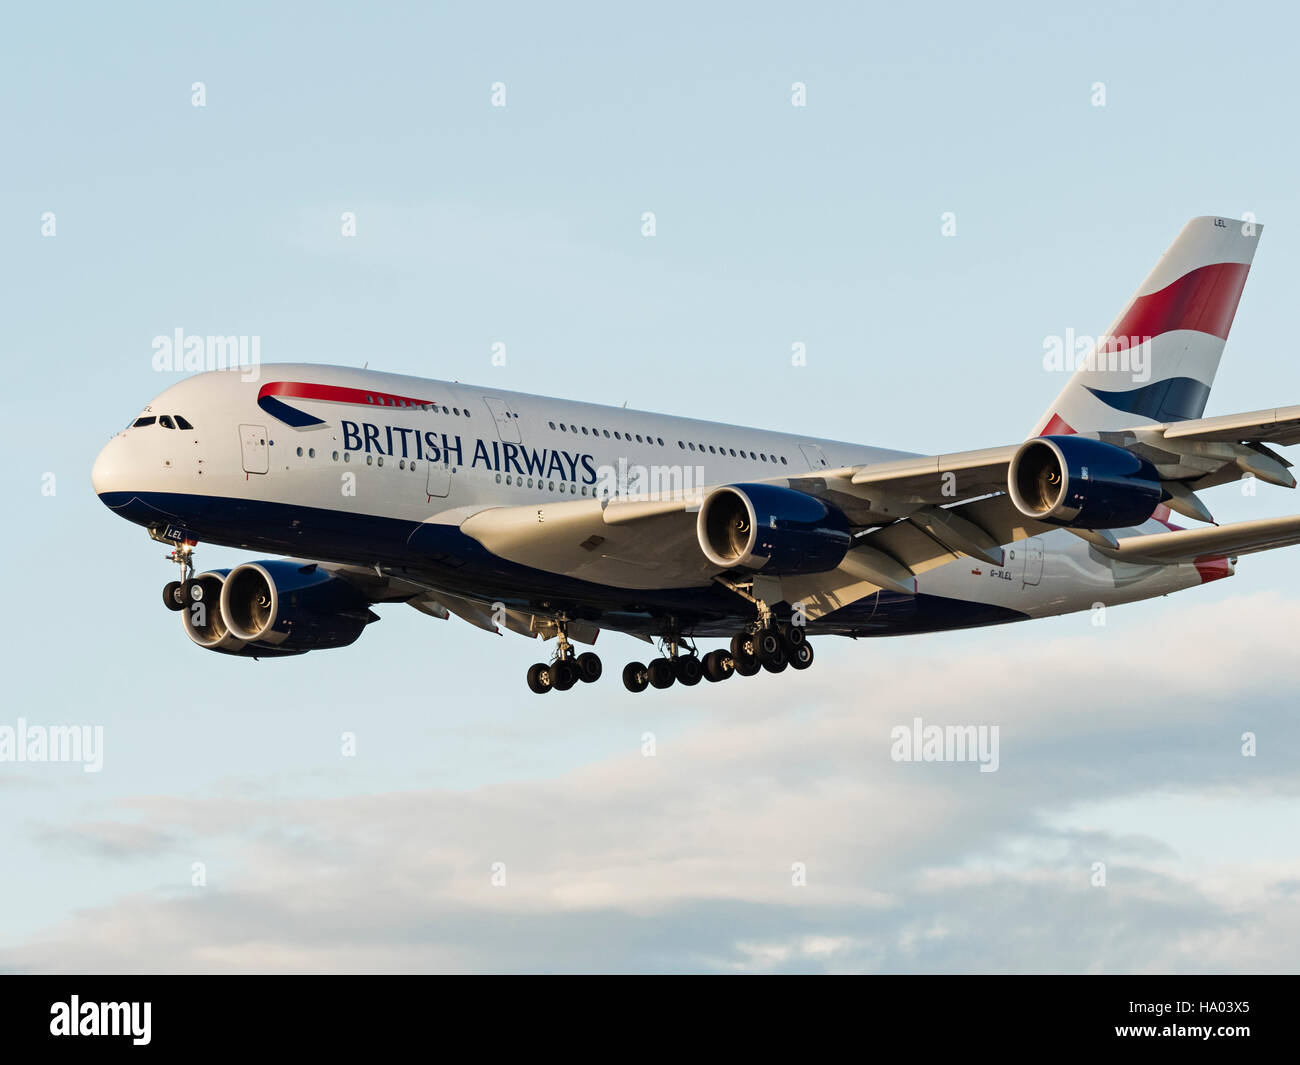 British Airways avión Airbus A380 de doble puente wide-body jet airliner avión Foto de stock